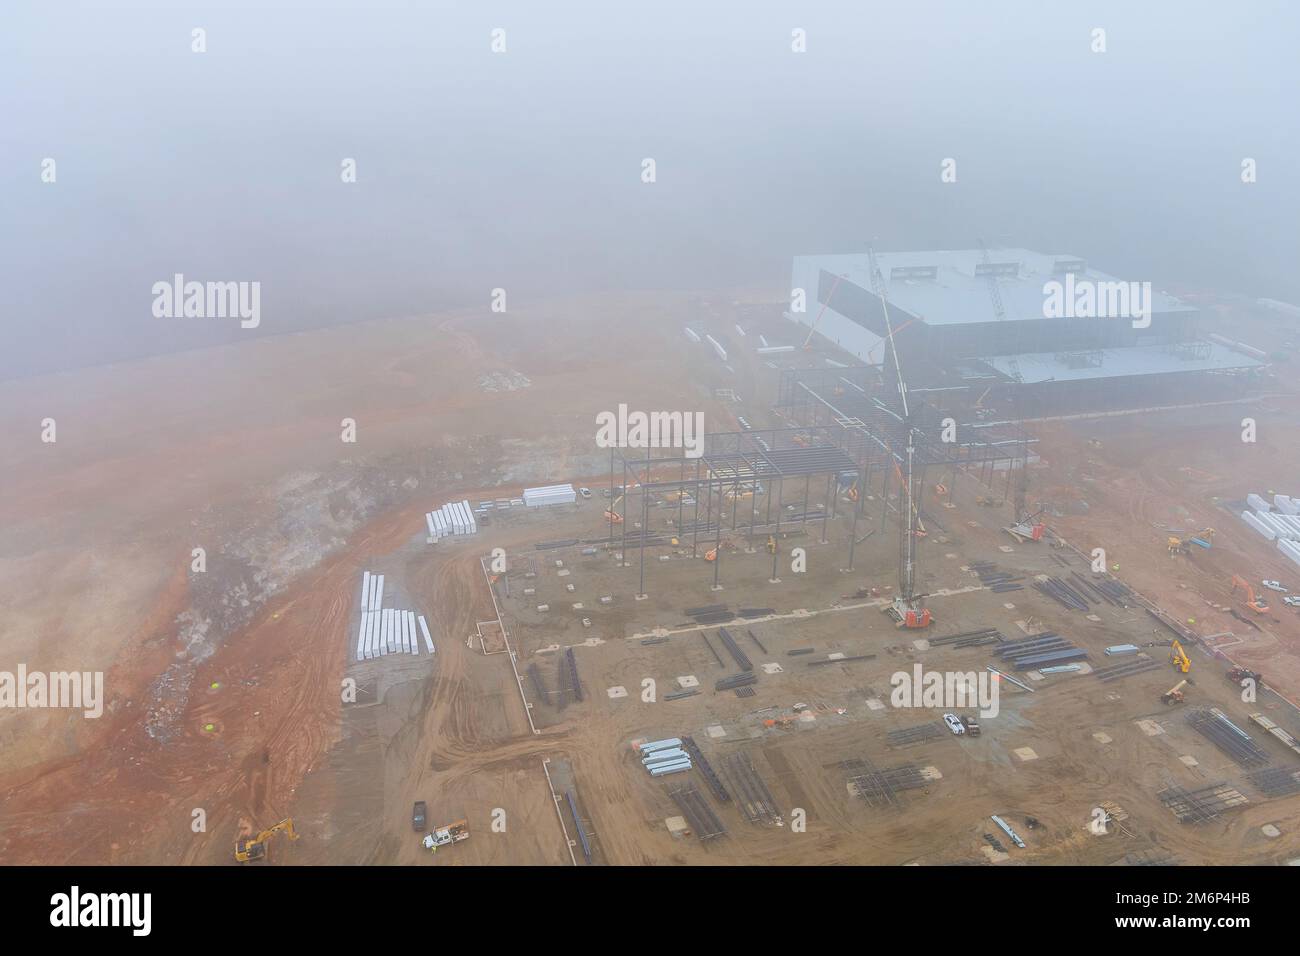 Dans le bâtiment commercial du chantier, une tour de grues travaille à l'aube pendant un brouillard épais Banque D'Images